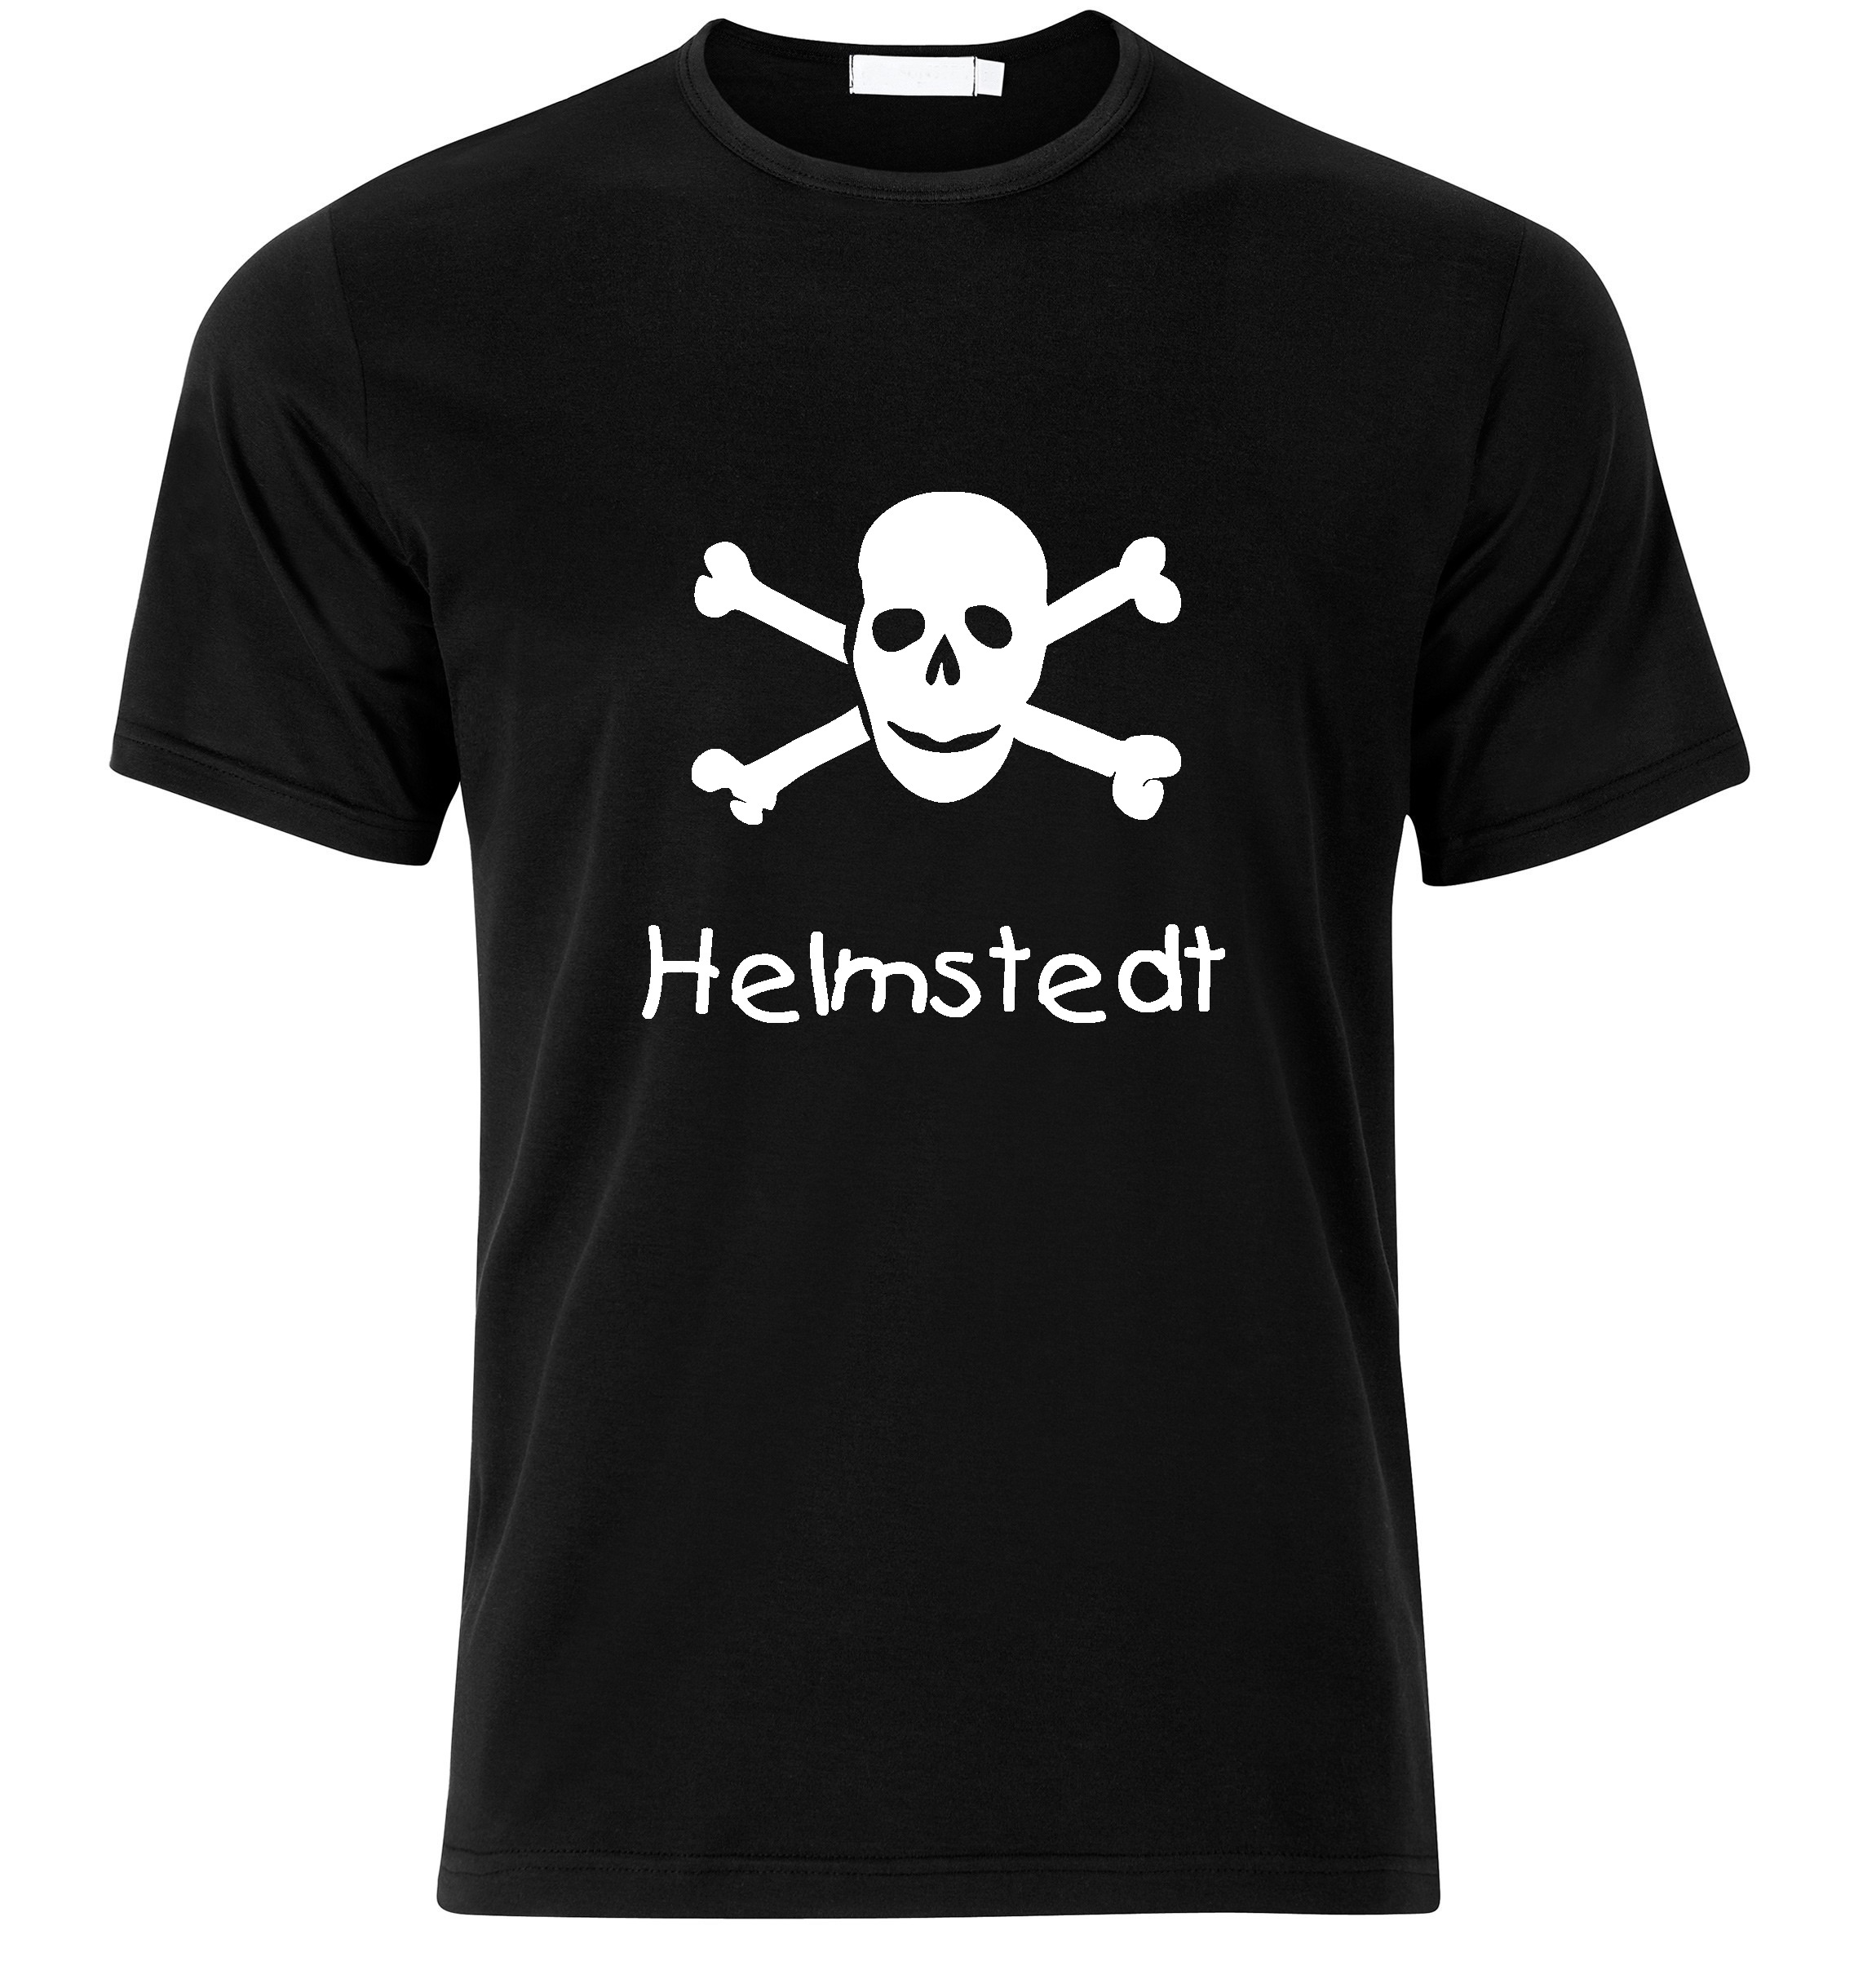 T-Shirt Helmstedt Jolly Roger, Totenkopf